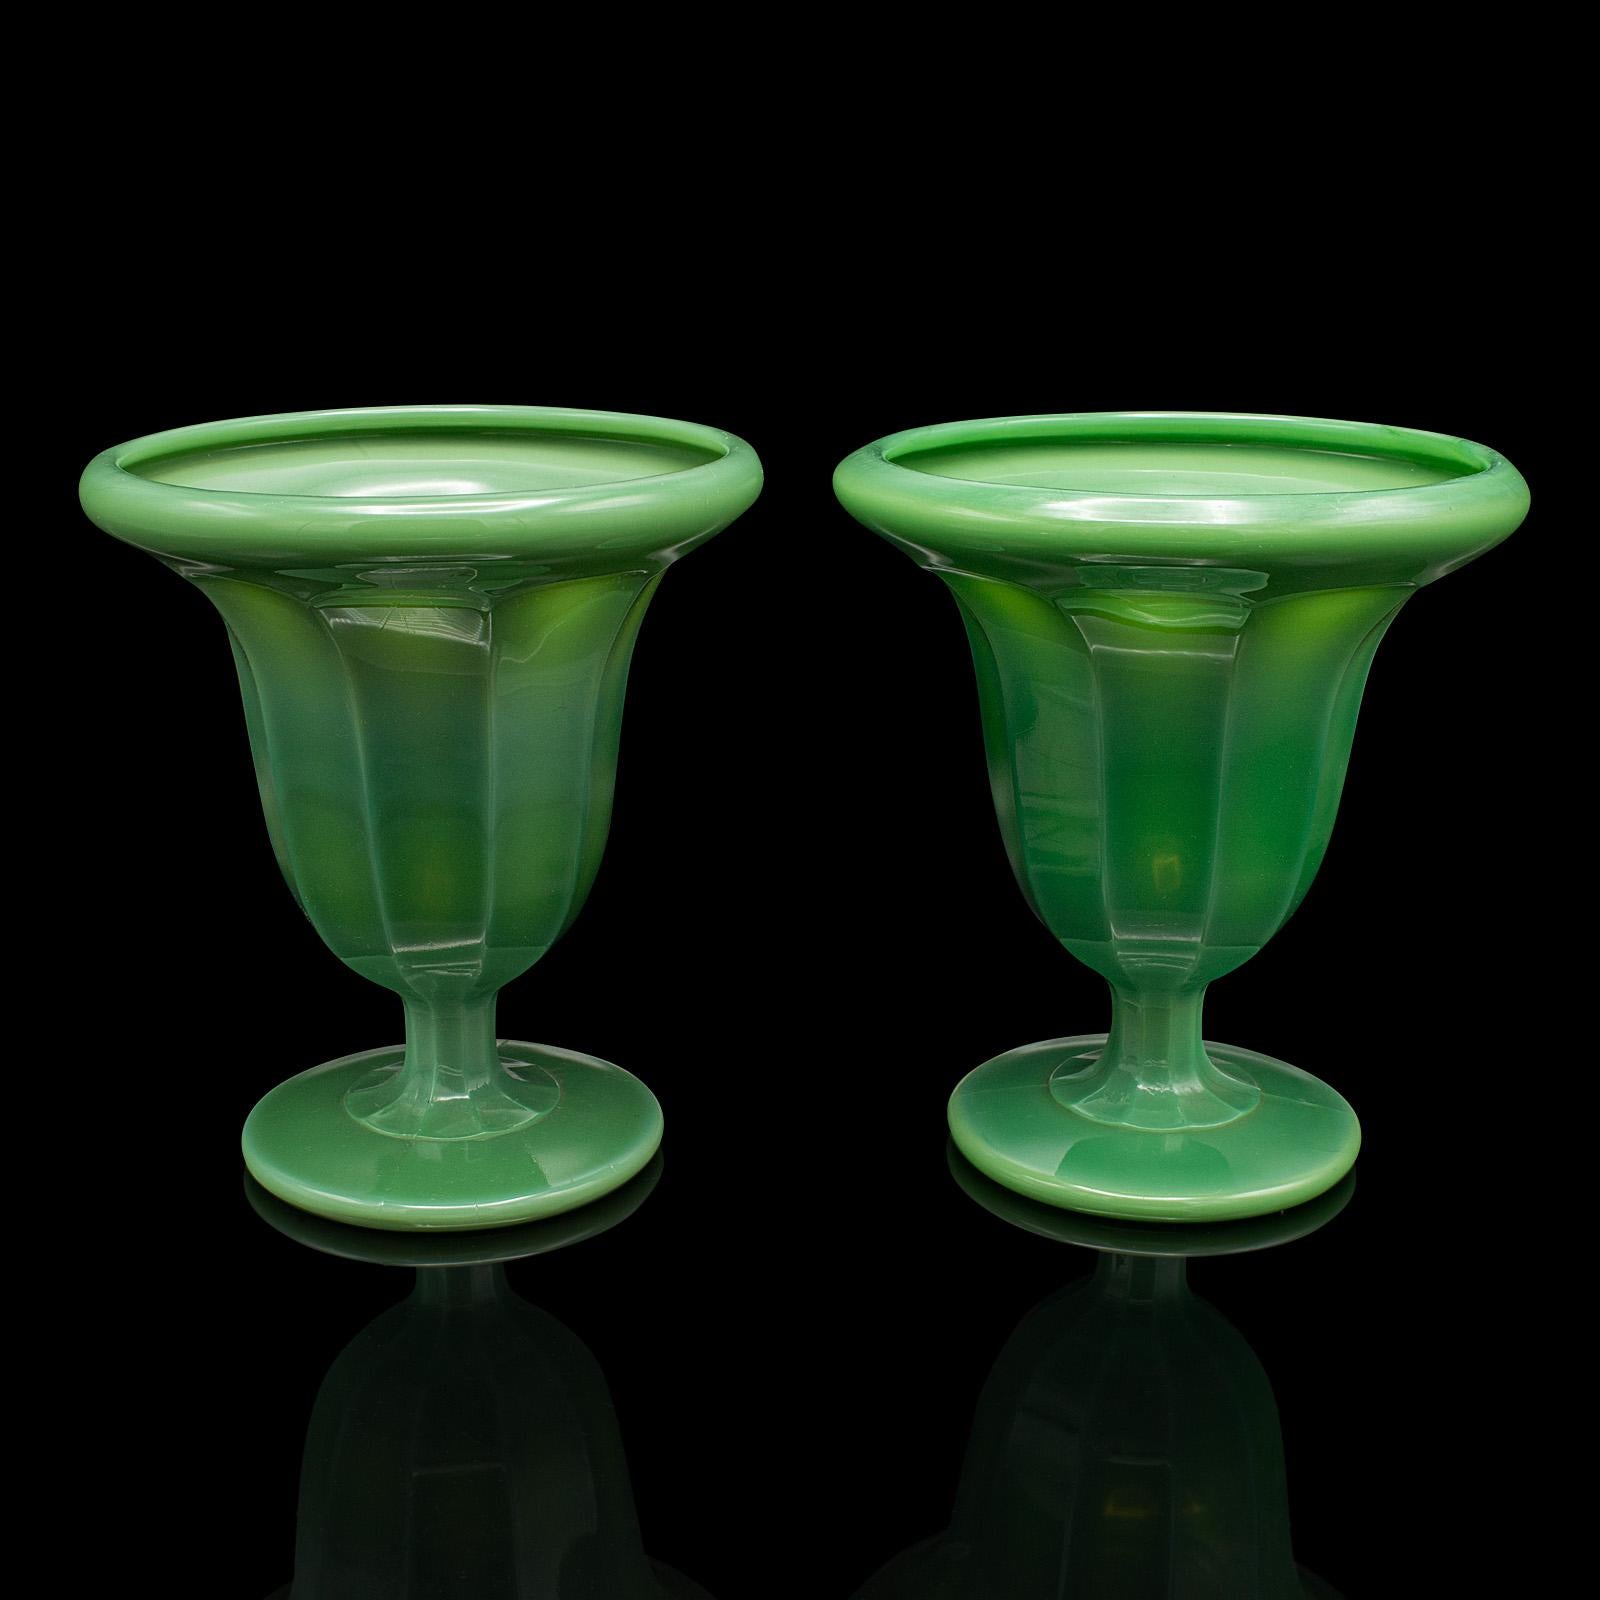 
Dies ist ein Paar dekorative Vintage-Vasen. Ein englischer Wolkenglas-Pflanztopf aus der Zeit des Art déco, um 1930.

Ungewöhnliche Glasoberfläche mit ausgeprägtem grünem Farbton
Zeigt eine wünschenswerte gealterte Patina und in gutem